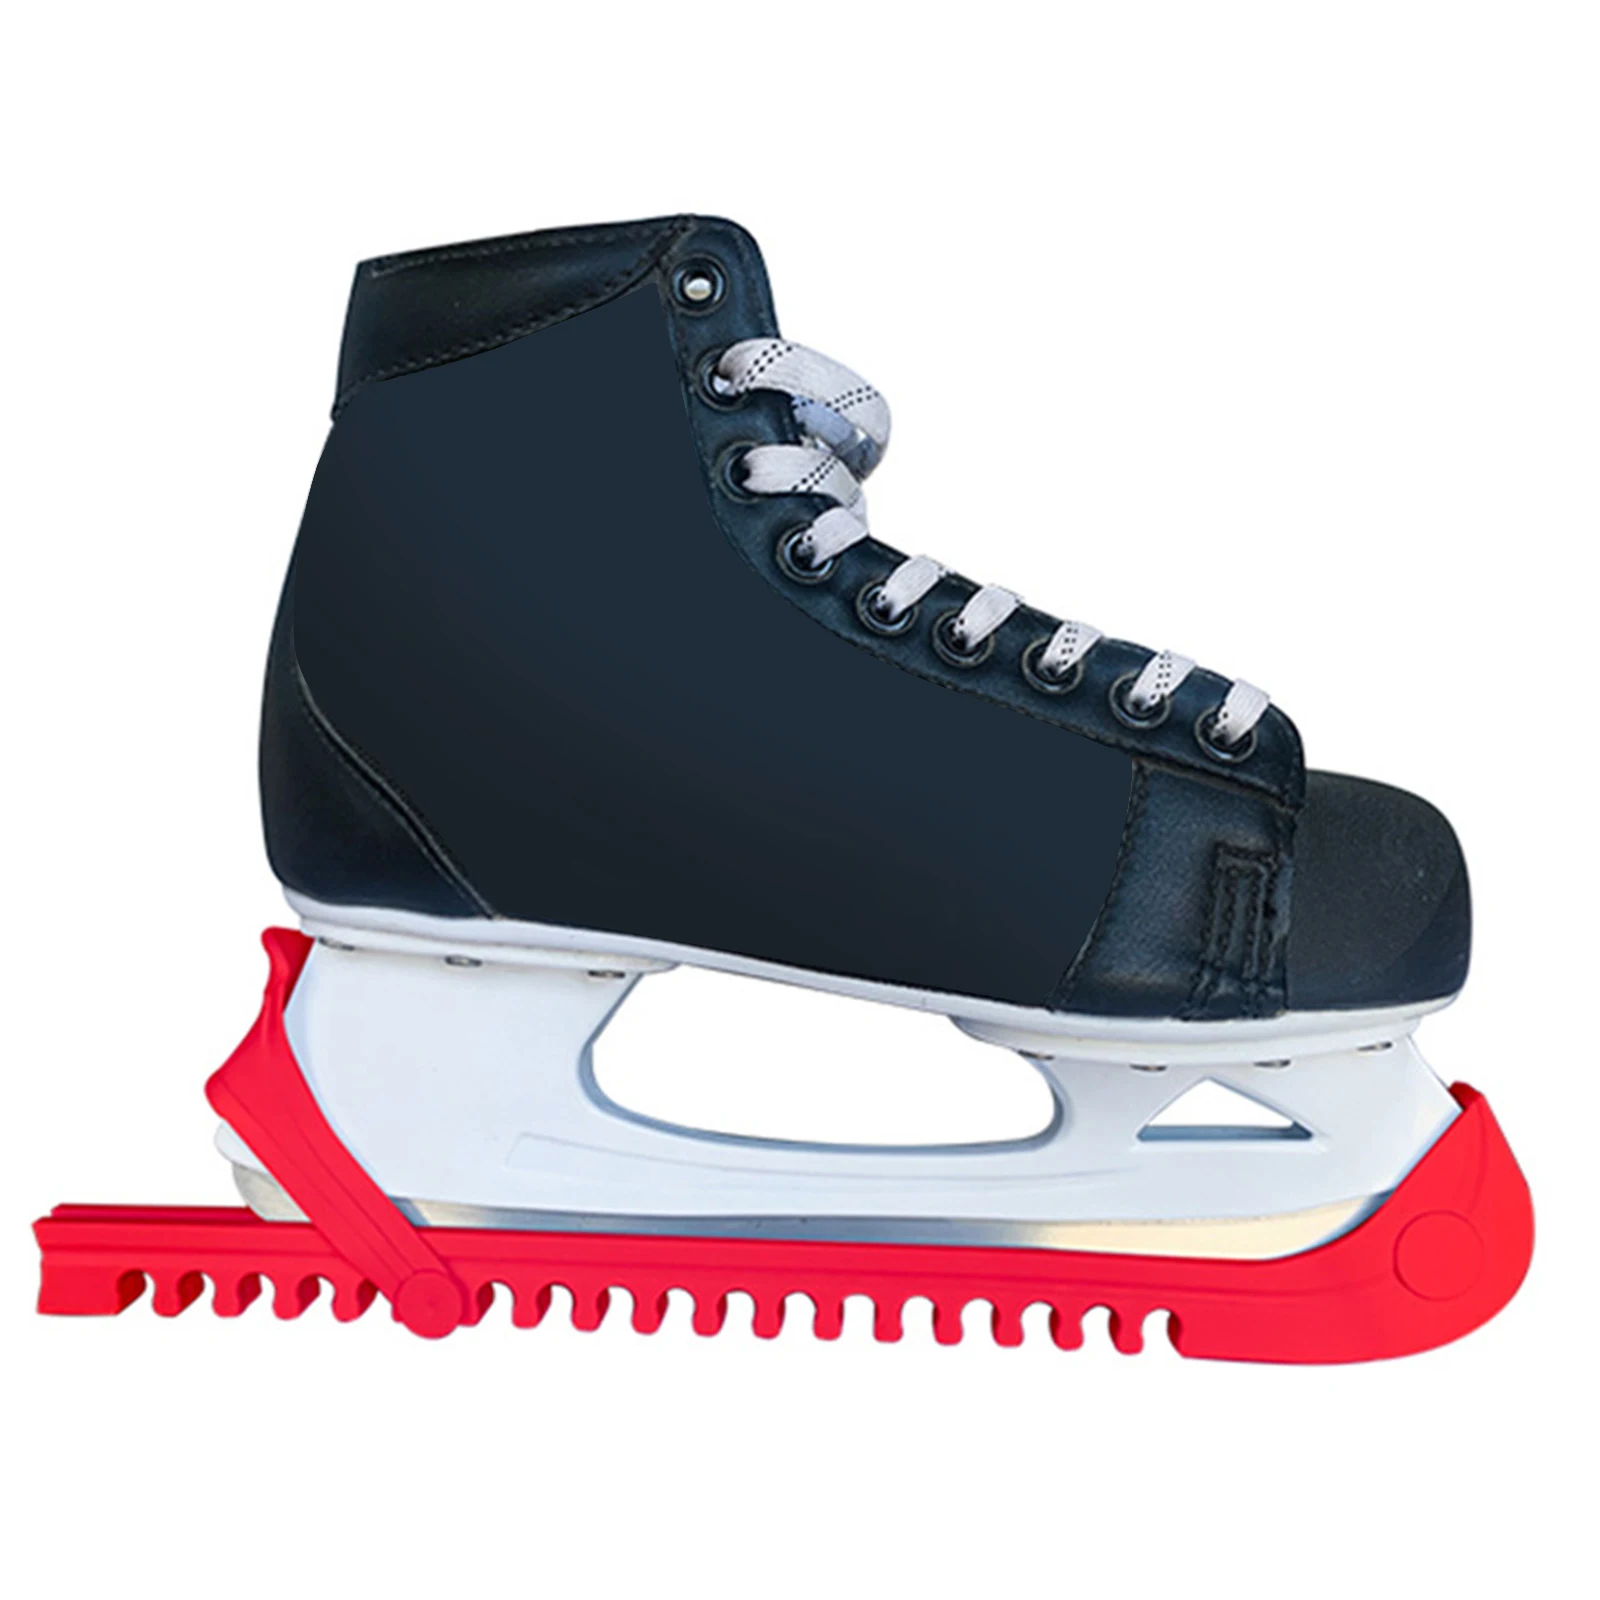 Регулируемый Хоккей Фигурное катание лезвие Крышка для катания на льду защита